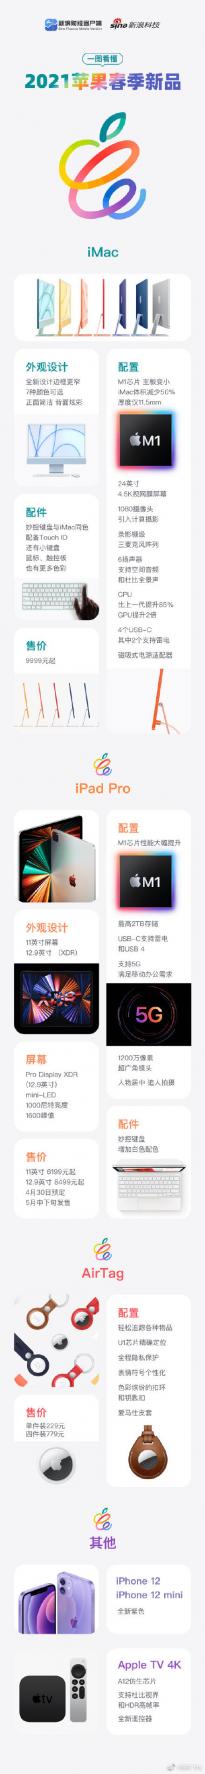 一图看懂苹果春季新品发布会：M1芯片 iPad Pro、AirTag功能配置